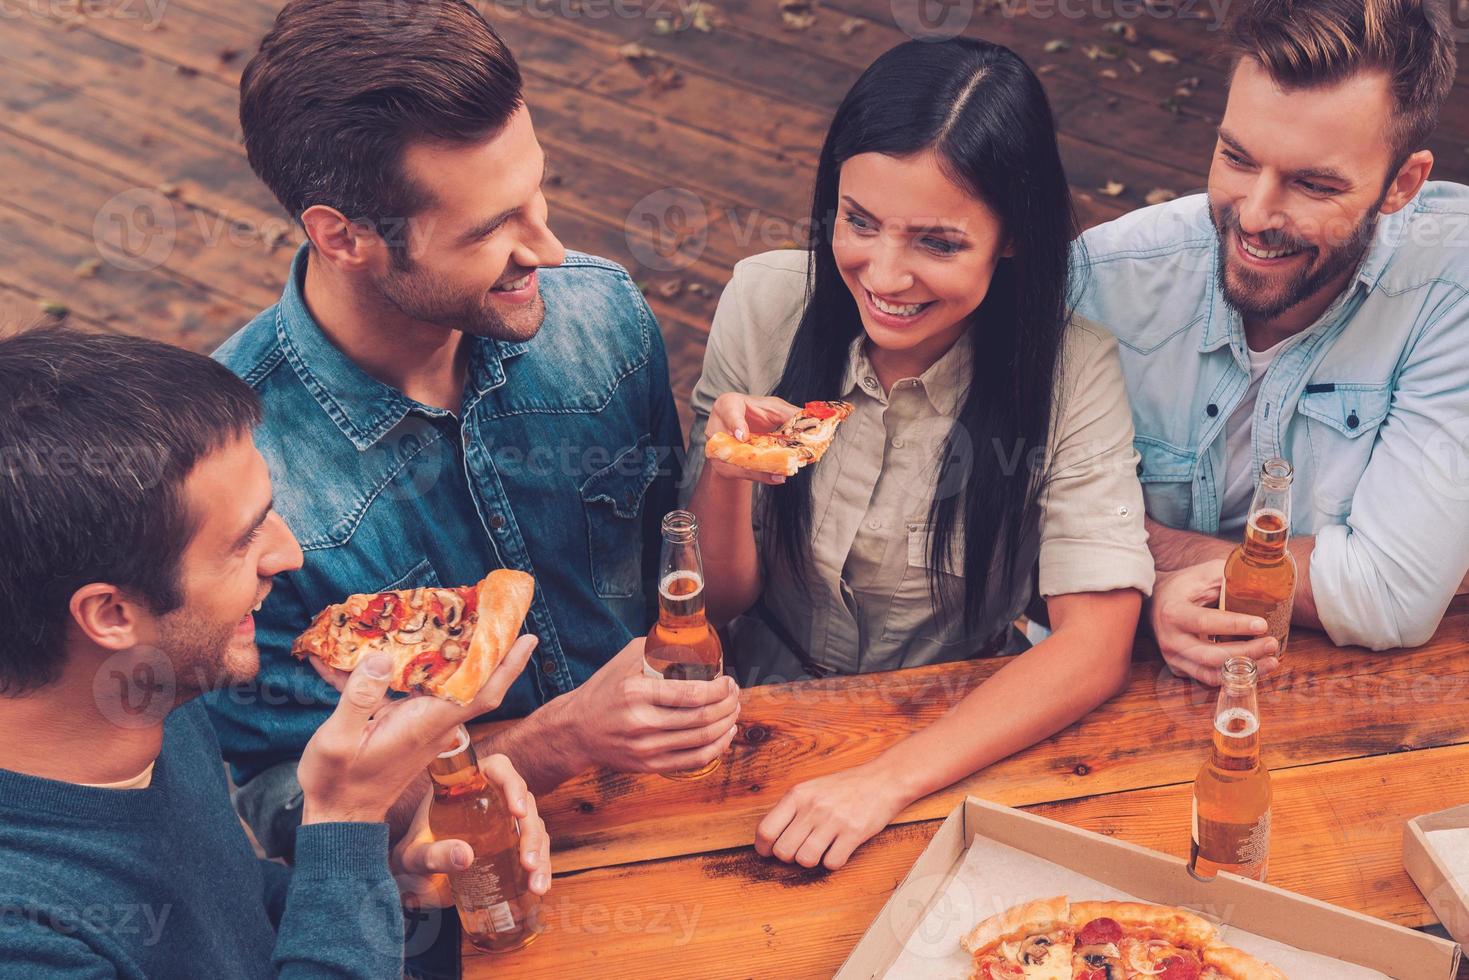 pizza tid. topp se av fem glad folkinnehav flaskor med öl och äter pizza medan stående utomhus foto